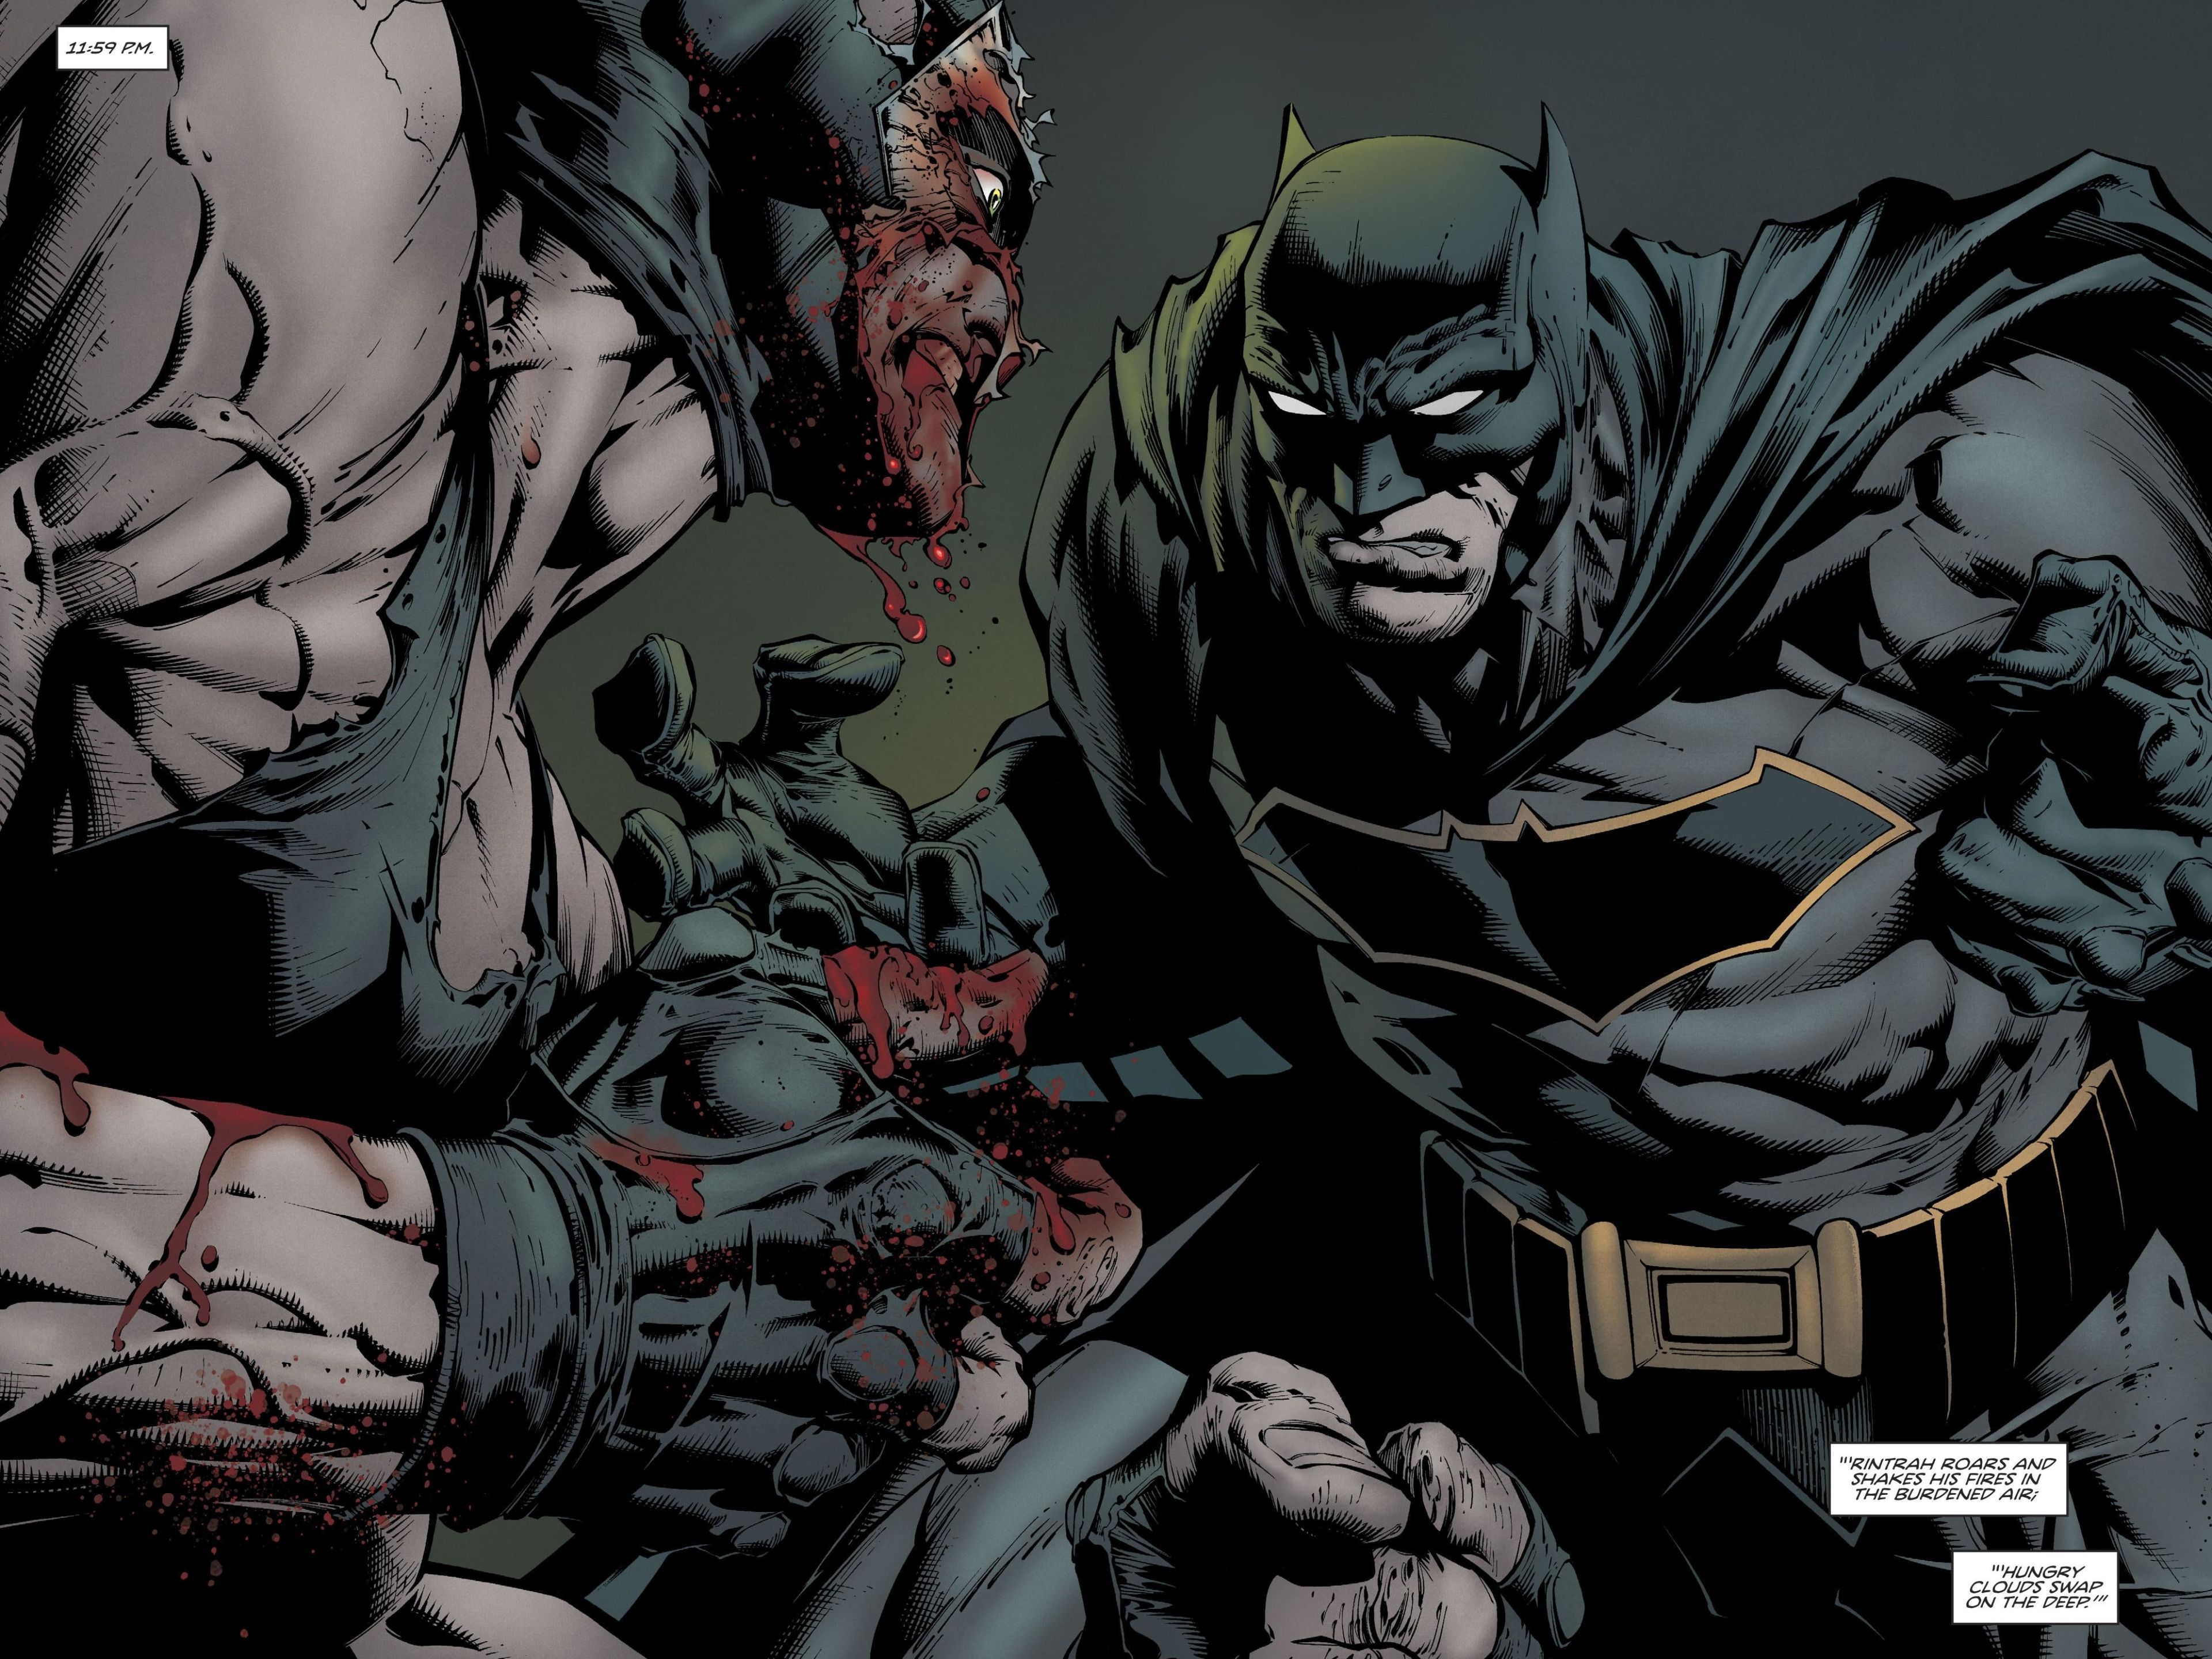 Batman vs Bane (DC Comics) 4K UHD 4:3 3840×2880 Wallpaper. UHD